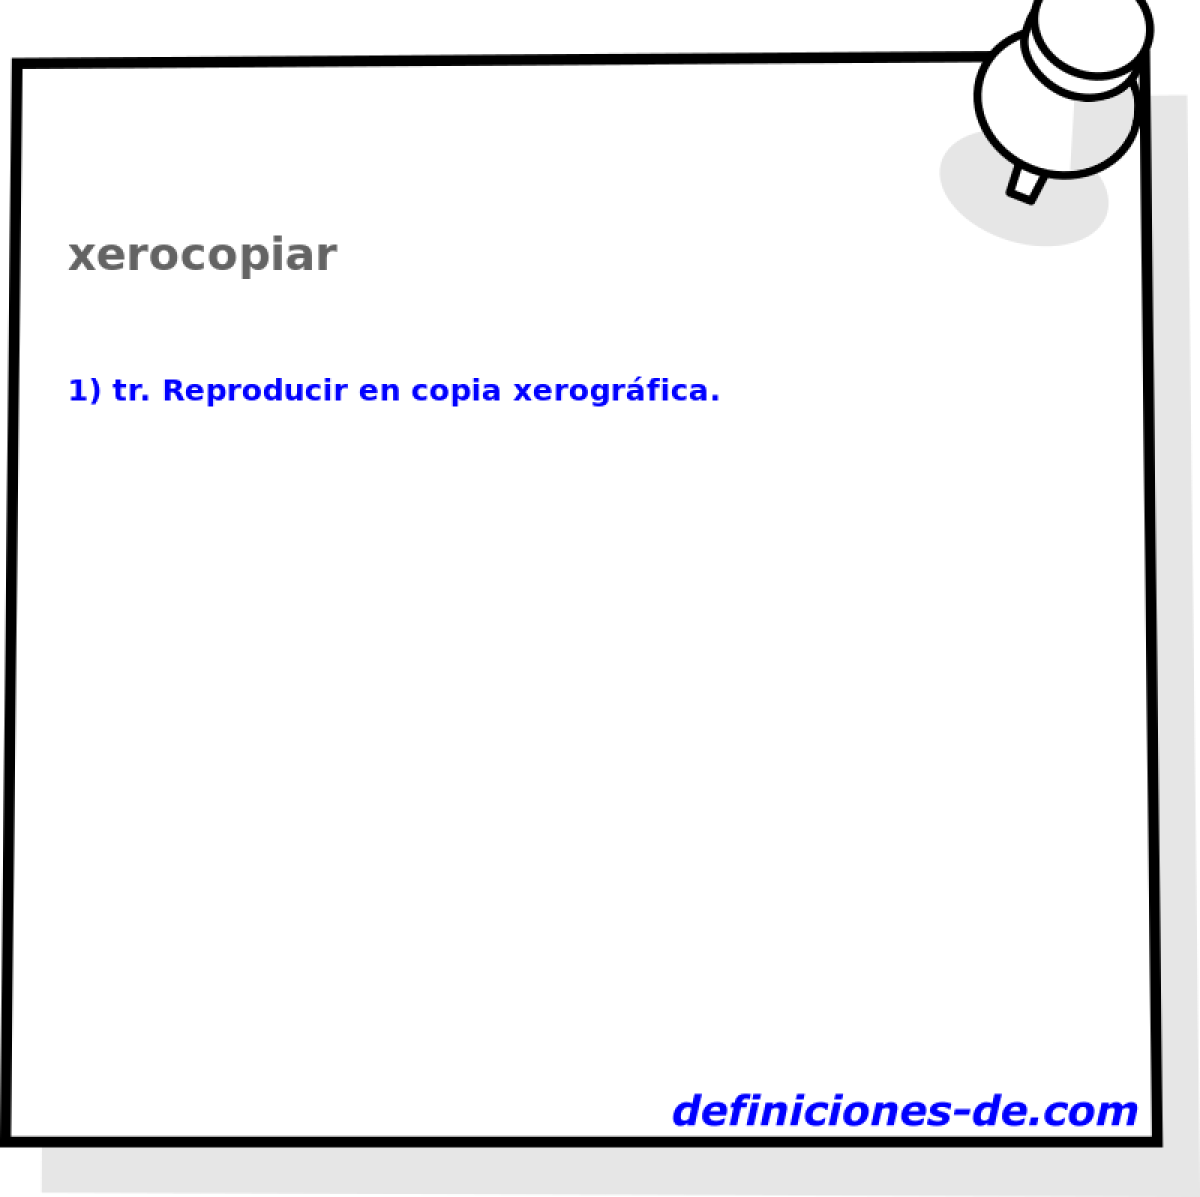 xerocopiar 